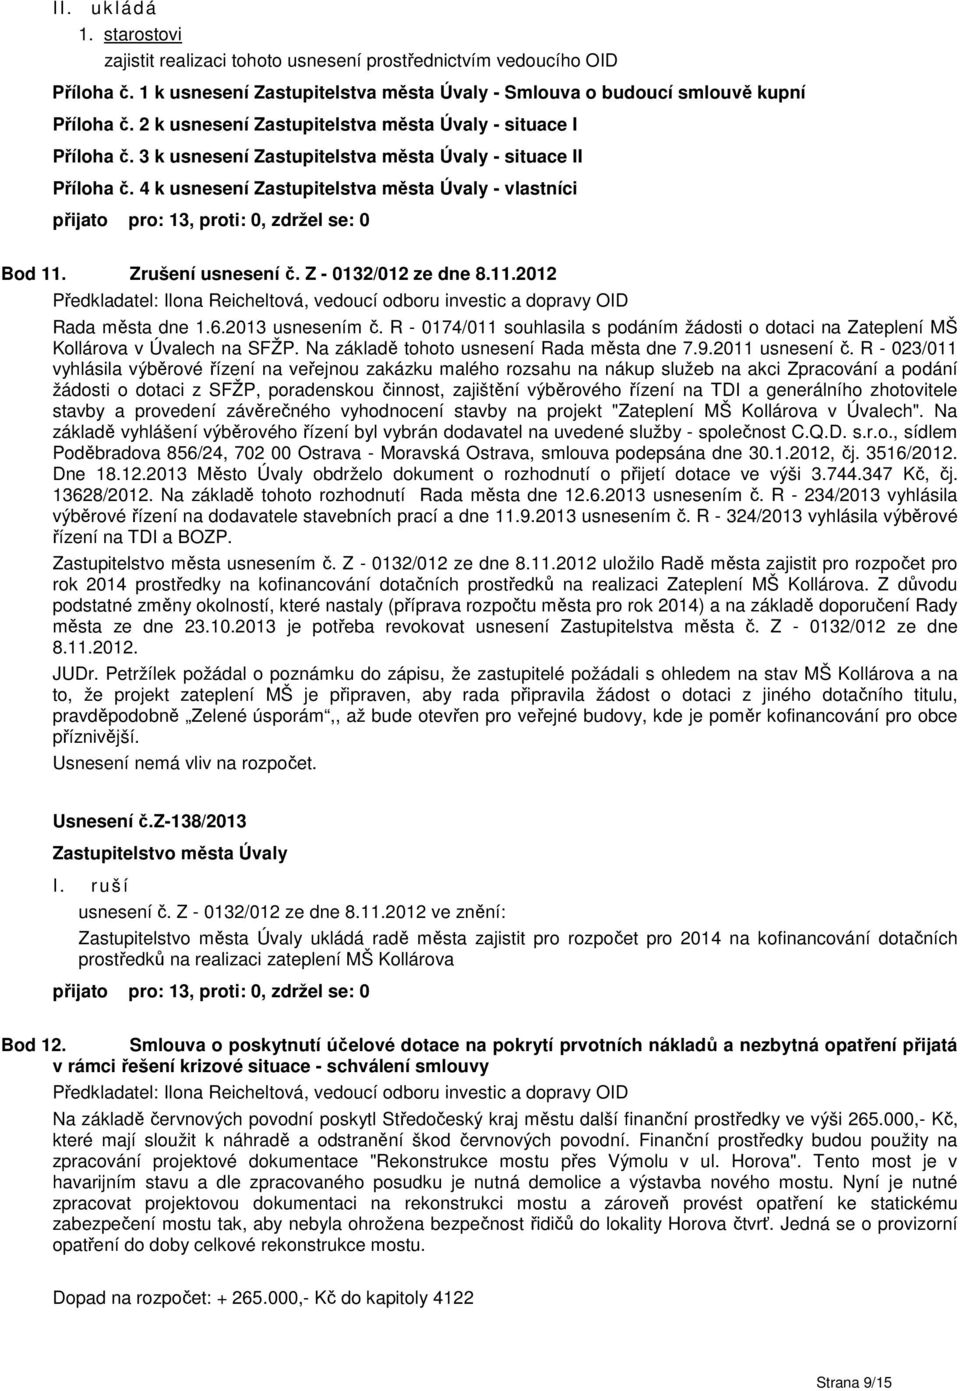 Zrušení usnesení č. Z - 0132/012 ze dne 8.11.2012 Rada města dne 1.6.2013 usnesením č. R - 0174/011 souhlasila s podáním žádosti o dotaci na Zateplení MŠ Kollárova v Úvalech na SFŽP.